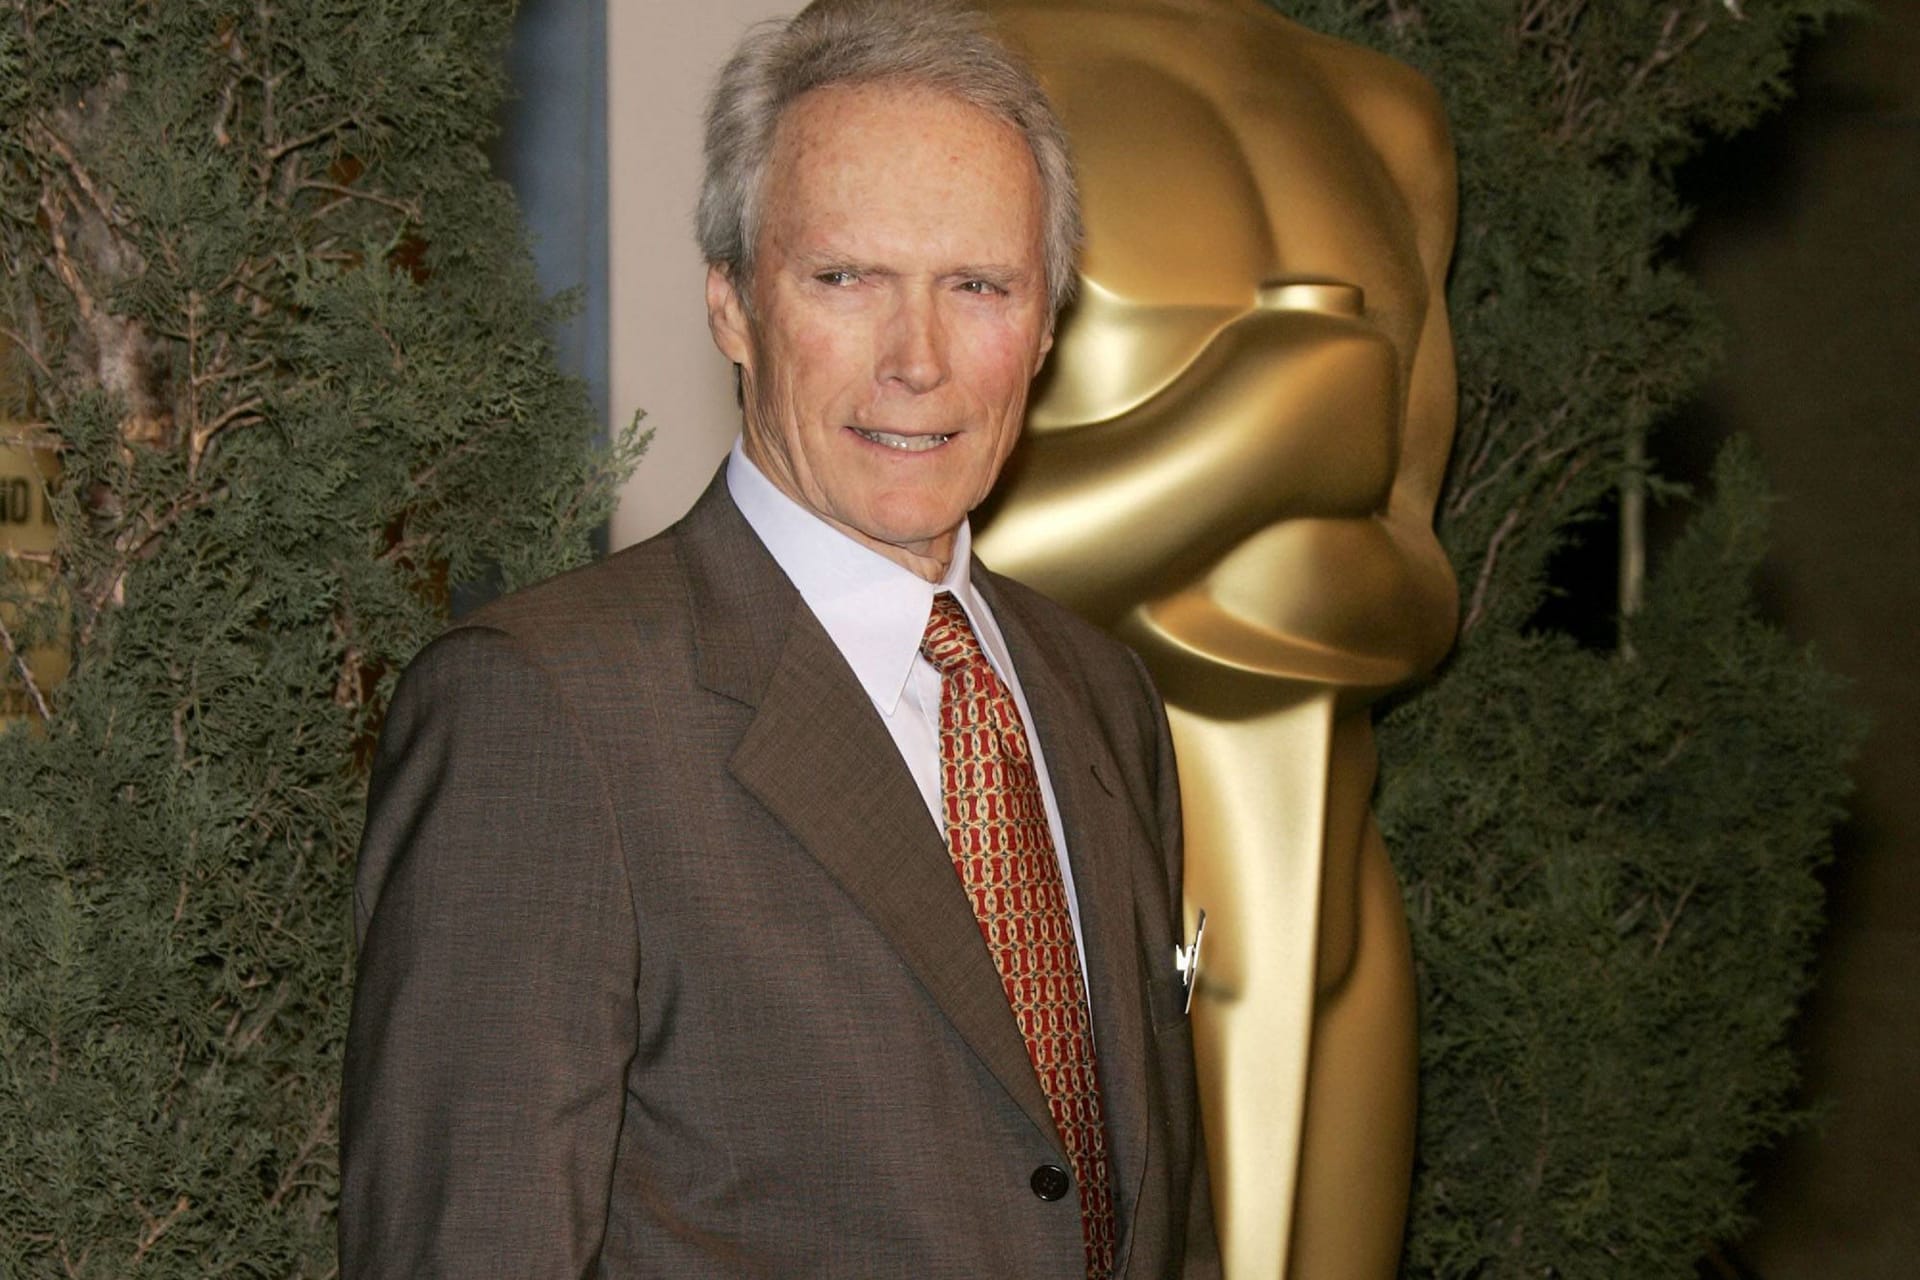 Clint Eastwood: Mit 93 Jahren ist er immer noch im Geschäft. Fast kein Wunder, dass er auch der älteste Regisseur ist, der je den Oscar gewann. Bei seinem Academy Award für "Million Dollar Baby" war er 2005 74 Jahre alt.